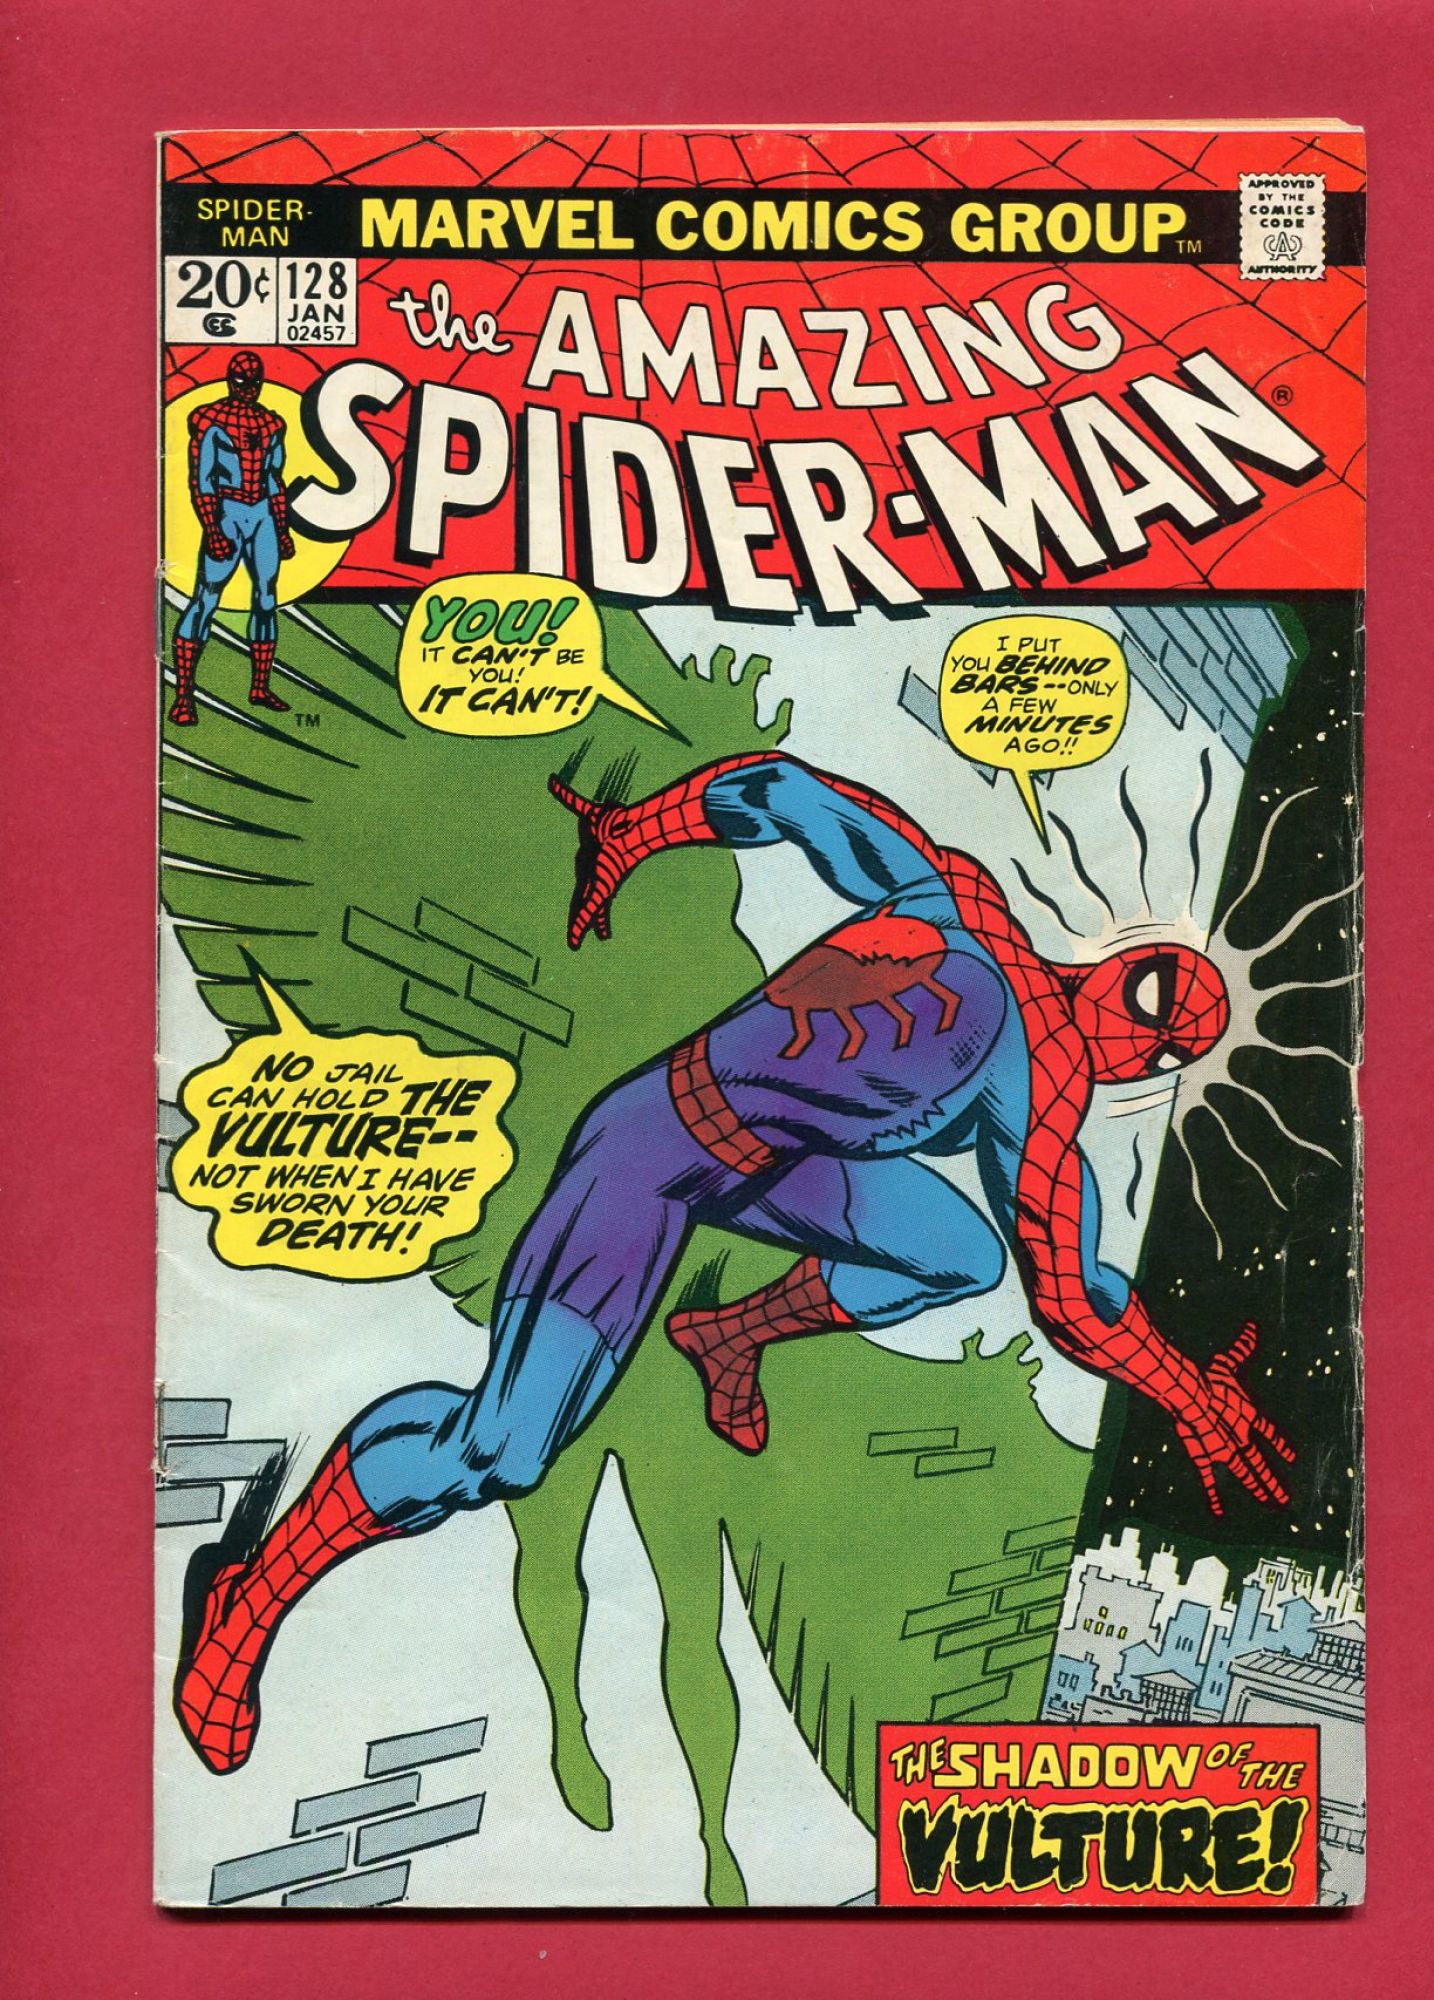 Amazing Spider-Man #128, Jan 1974, 4.0 VG